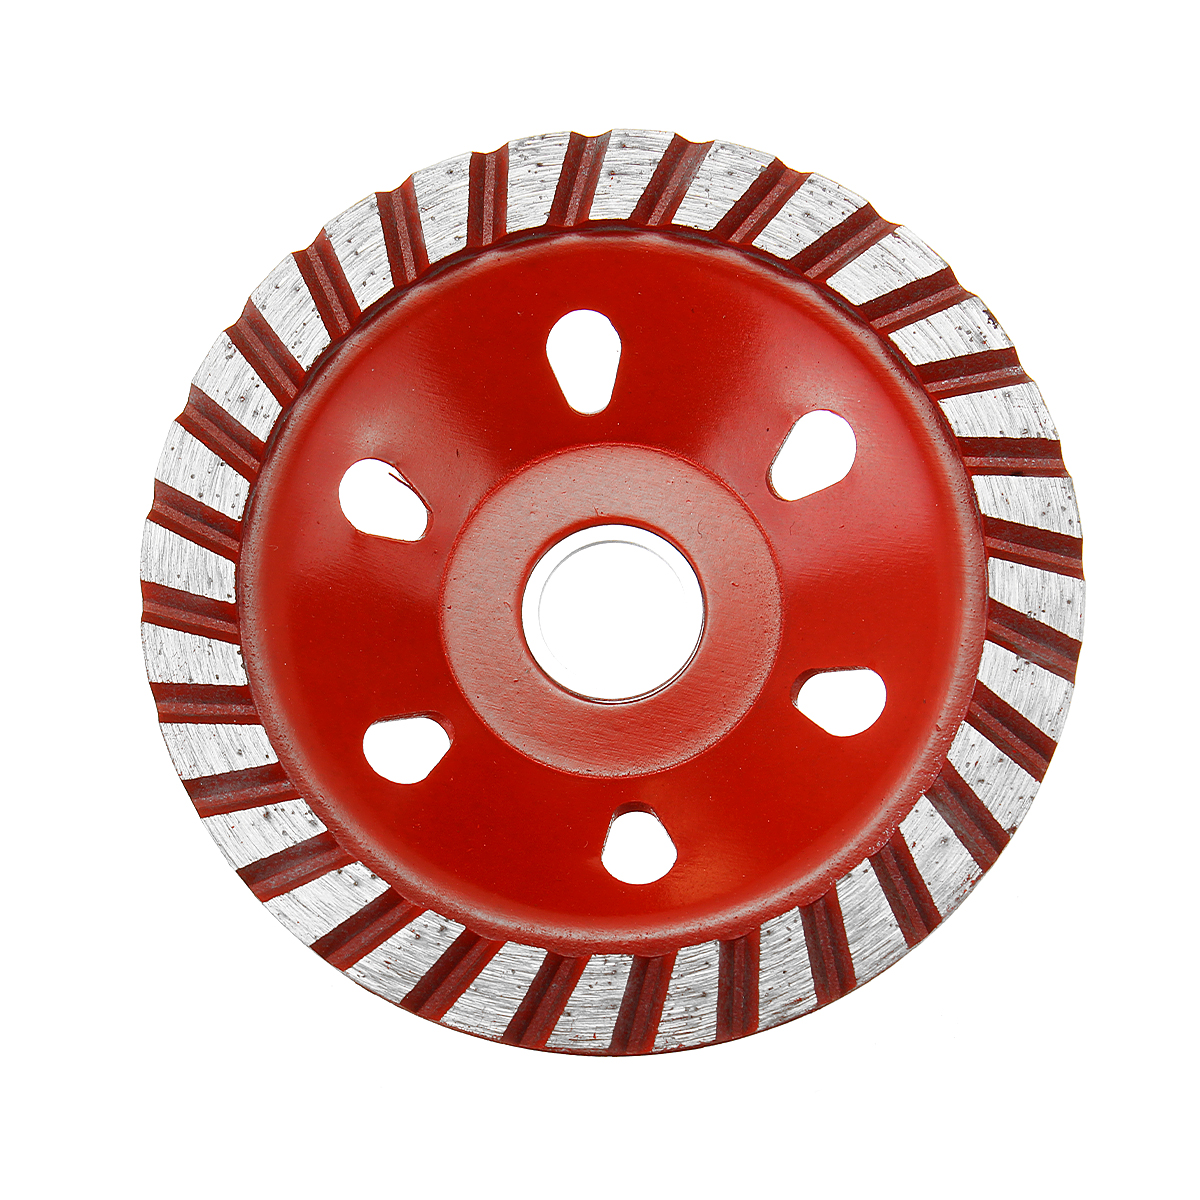 

100мм алмазный шлифовальный круг диск бетон кирпичный камень шлифовальный круг красный